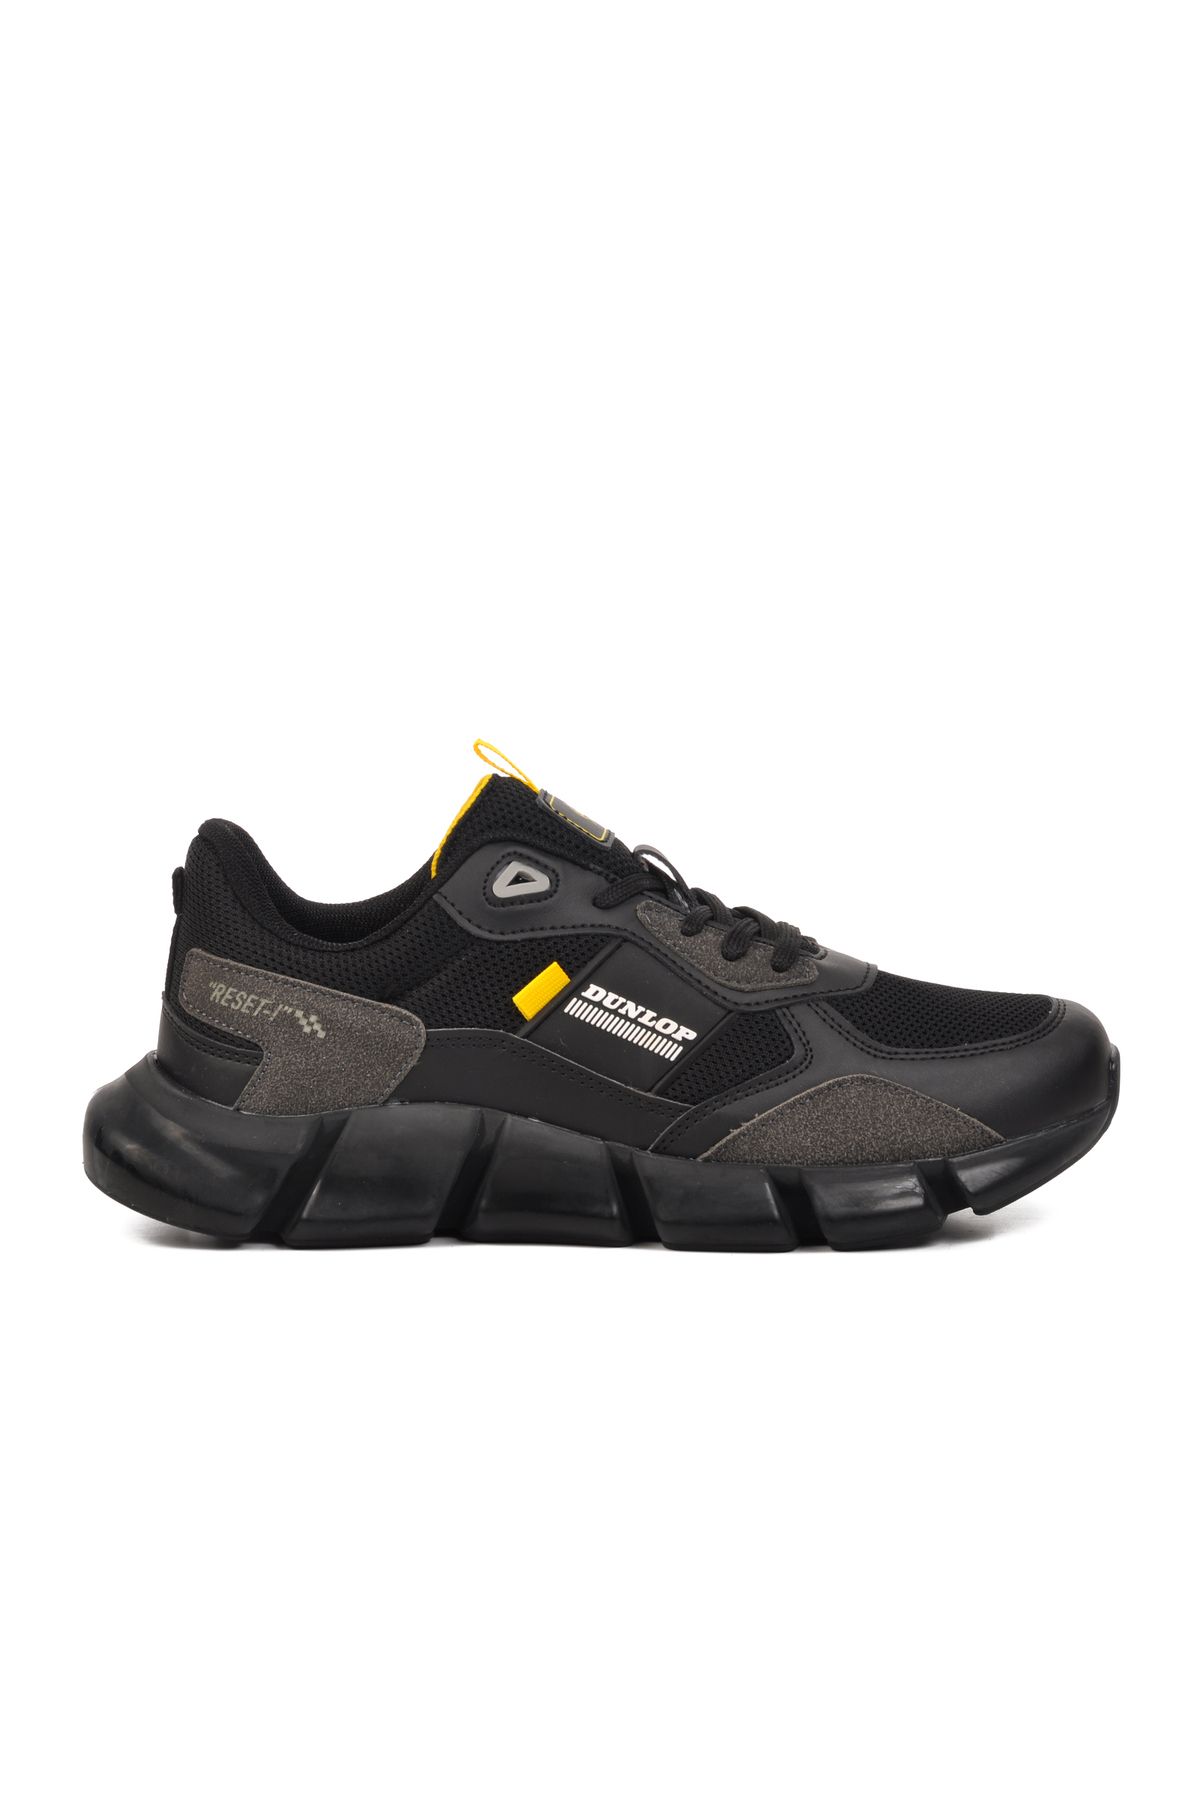 Dunlop Dnp-2340 Siyah-sarı Erkek Spor Ayakkabı